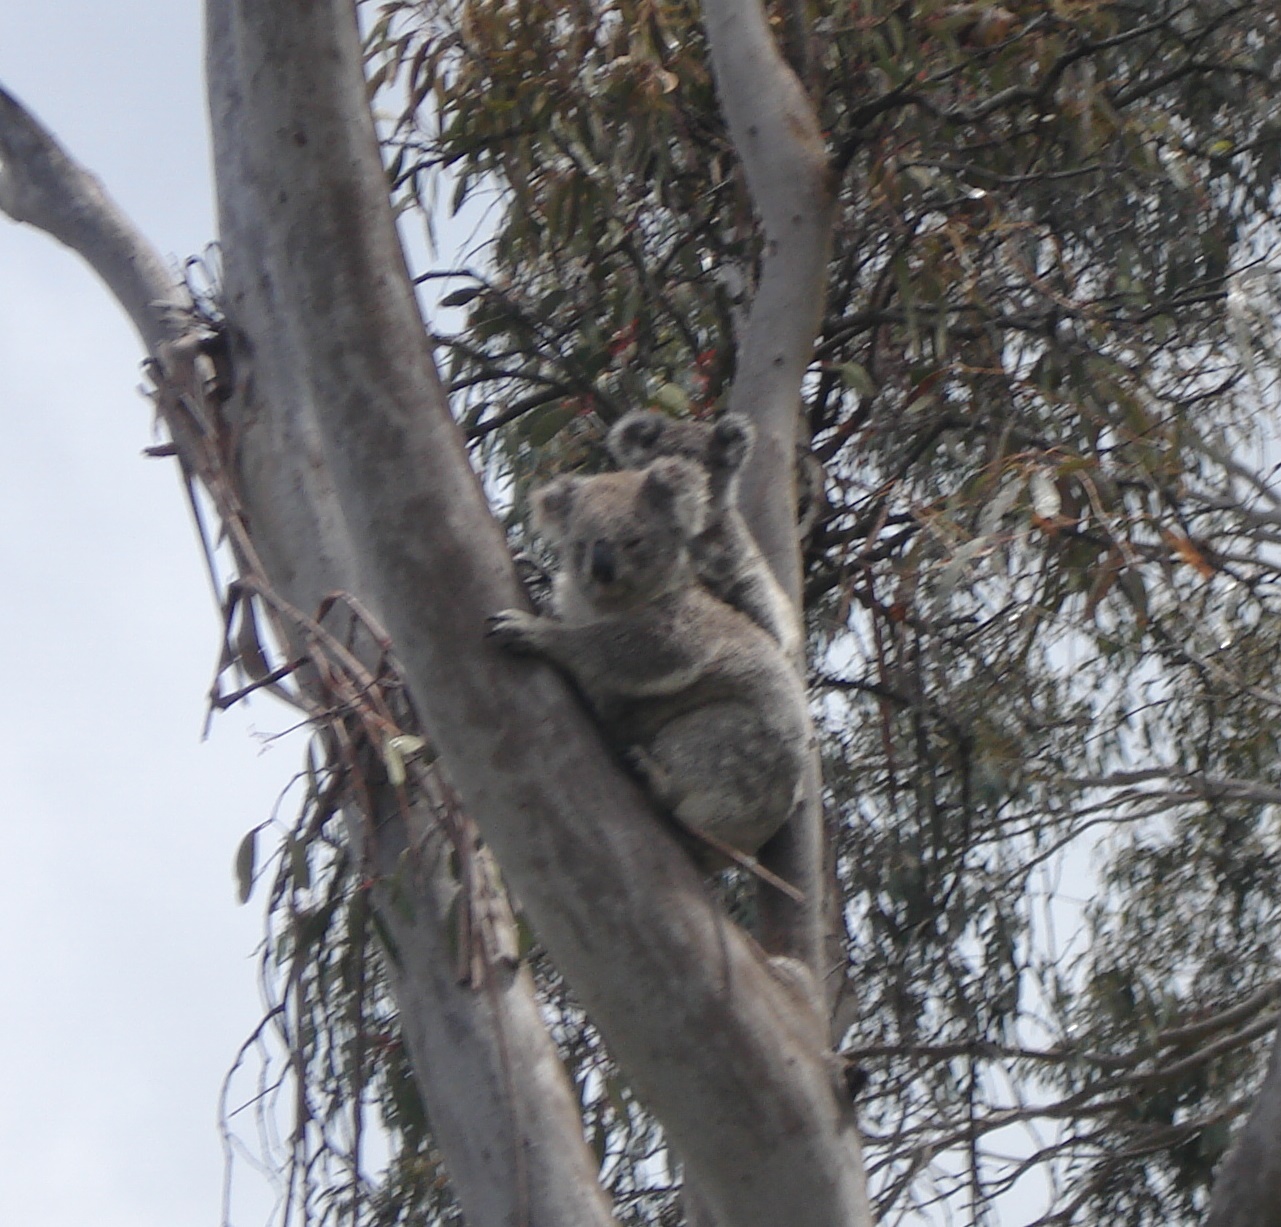 South Armidale Koala